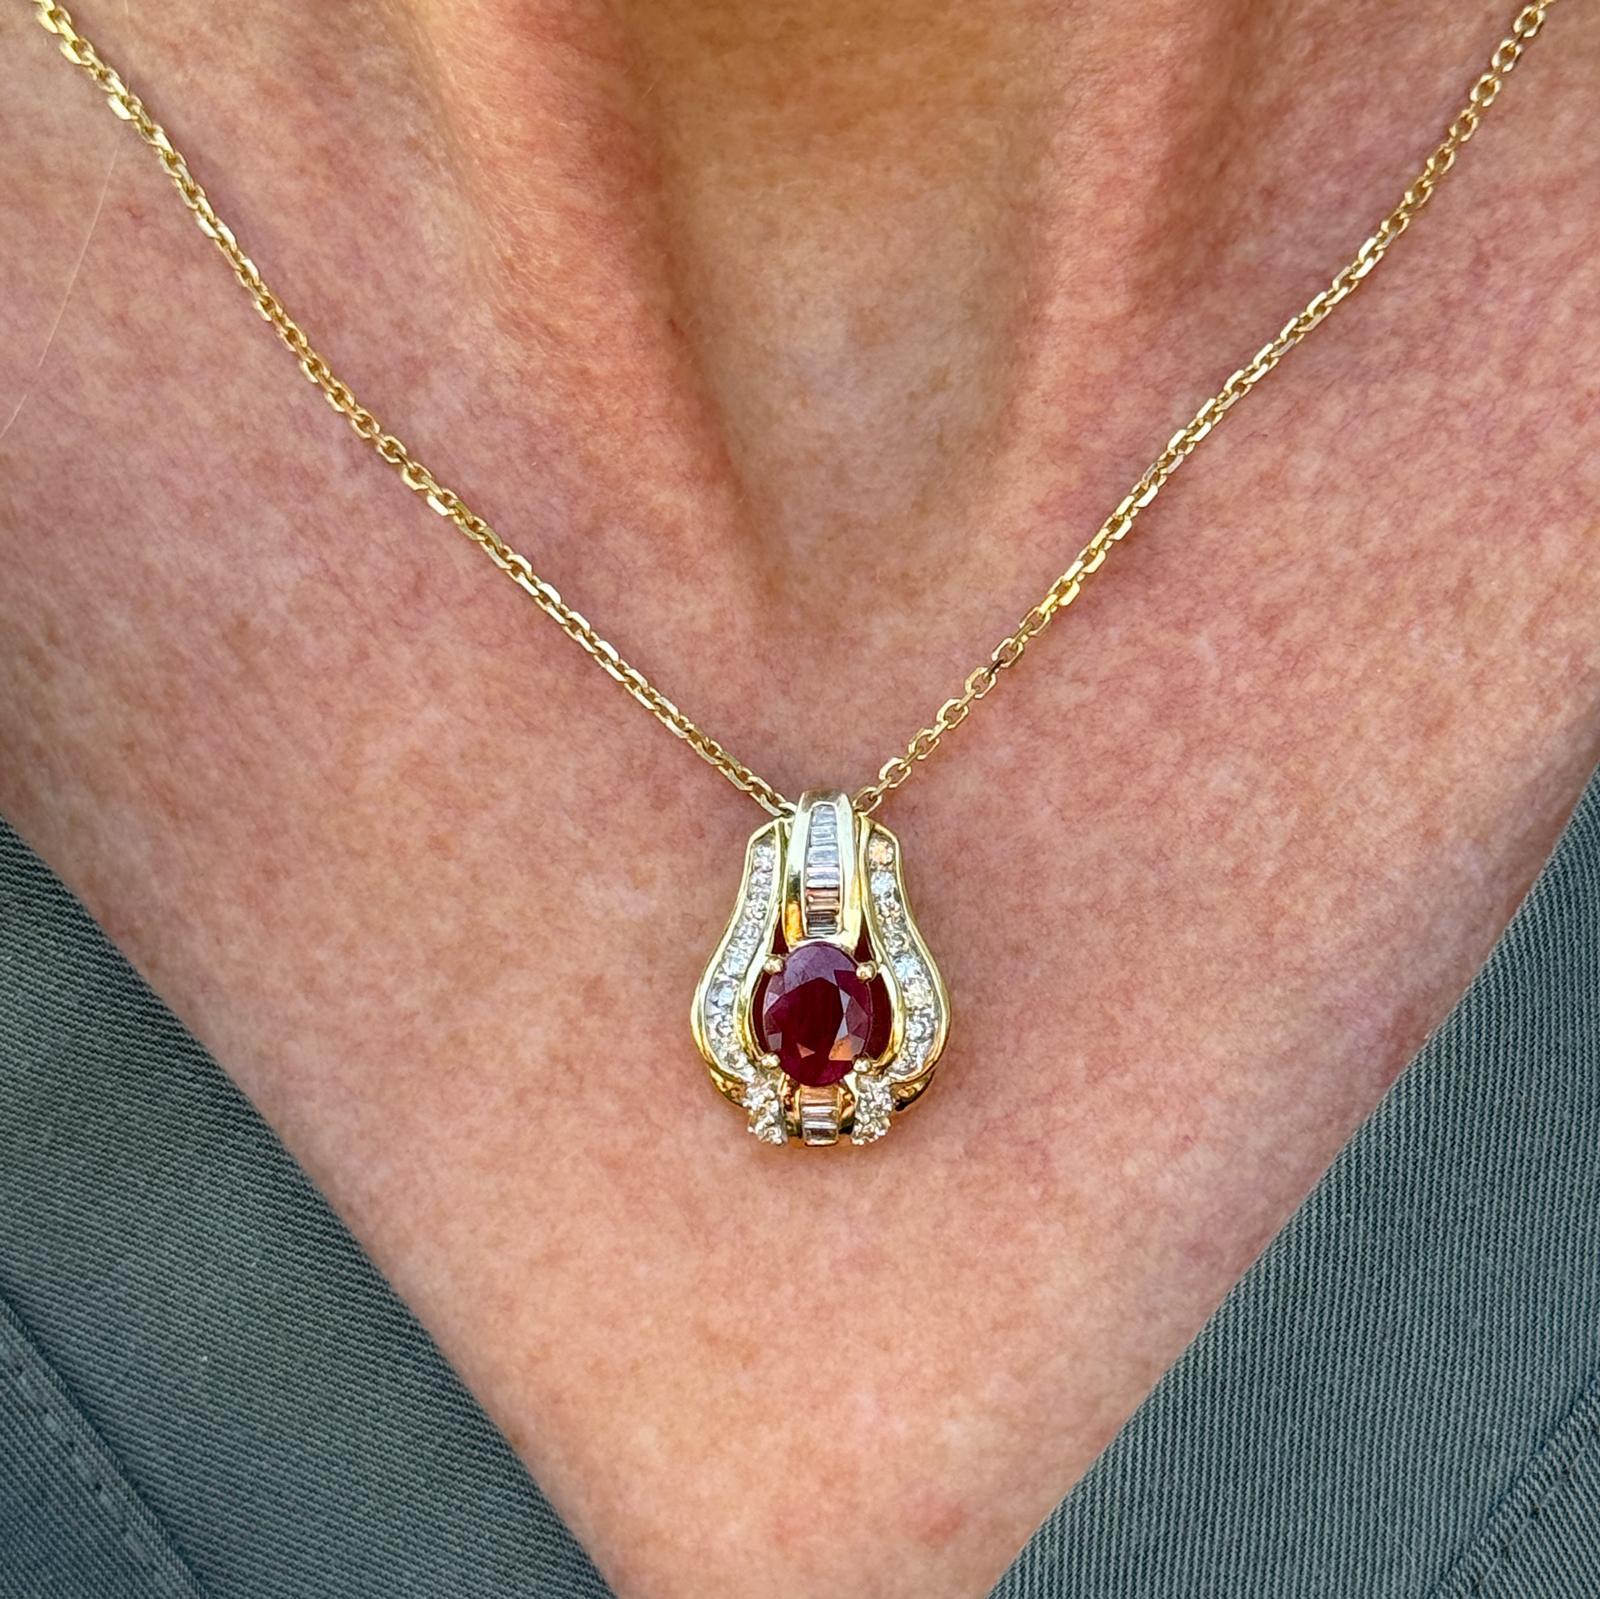 Le point focal du pendentif est un rubis ovale vibrant (environ 1,35 carat), connu pour sa teinte rouge profond symbolisant la passion et la vitalité. Autour du rubis, 20 diamants ronds de taille brillant et baguette étincellent, ajoutant de l'éclat